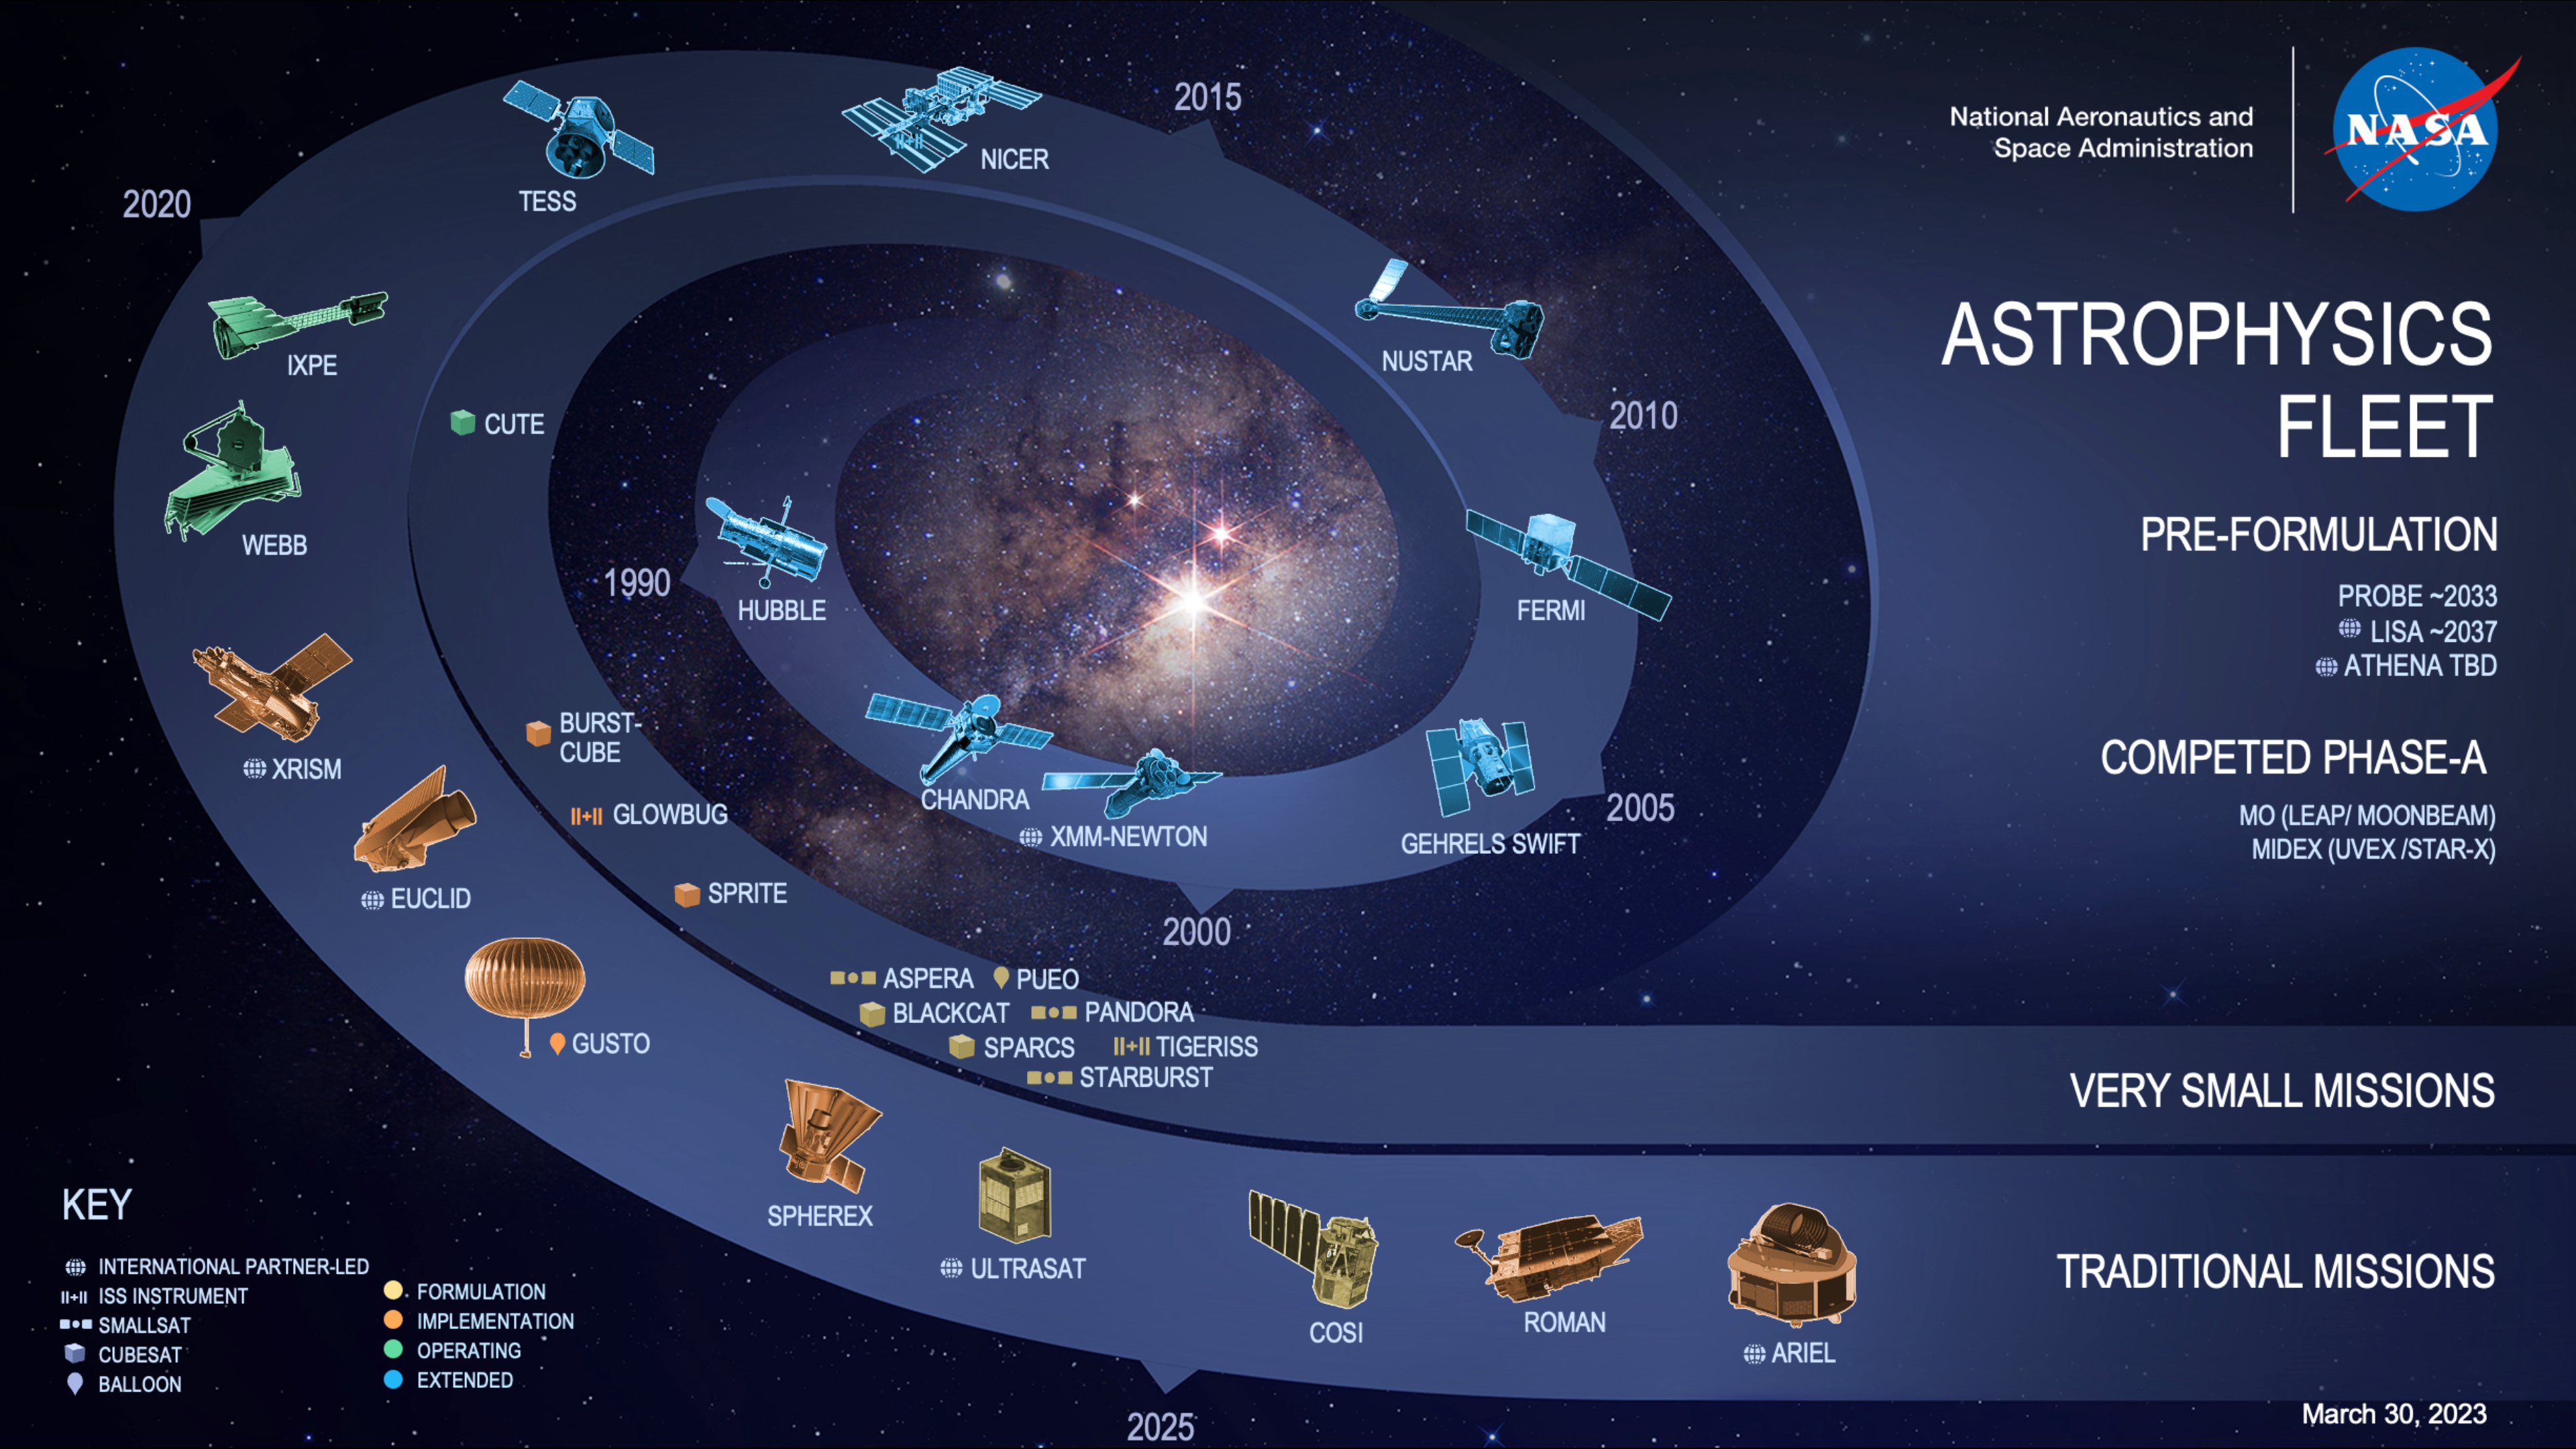 NASA SVS | NASA's Astrophysics Fleet